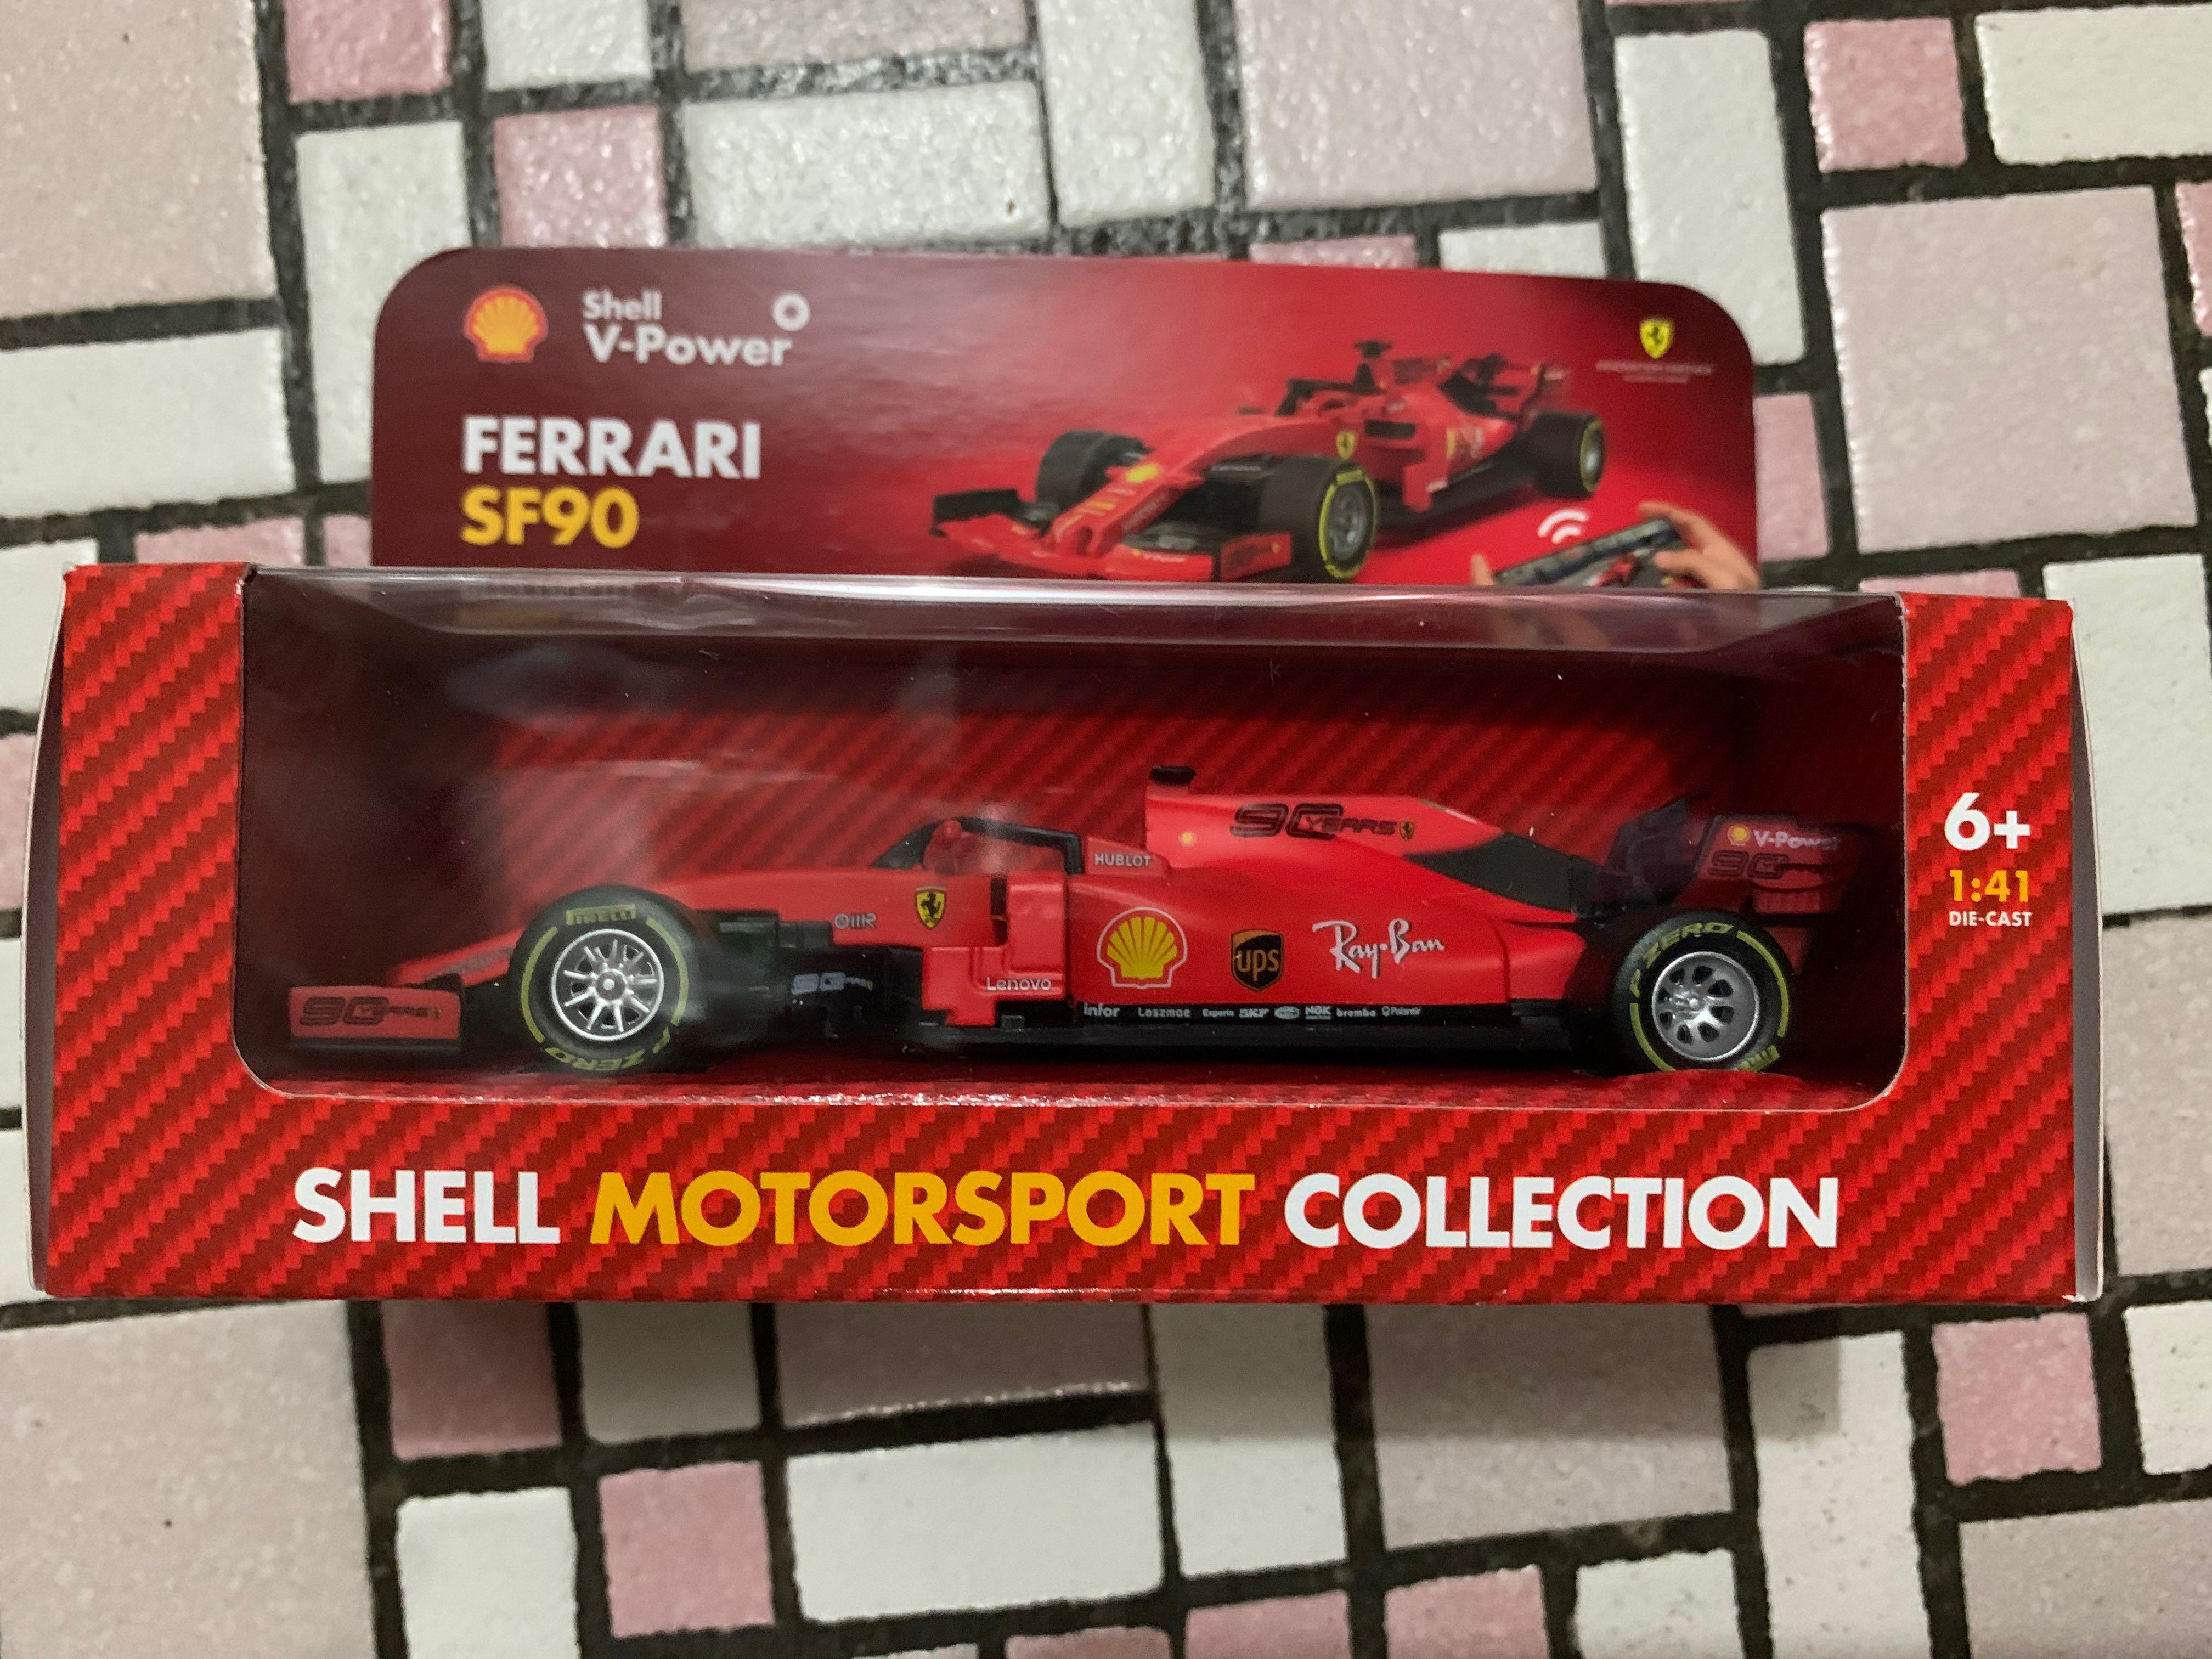 全新shell Ferrari Sf90 藍芽搖控車 興趣及遊戲 收藏品及紀念品 明星周邊 Carousell